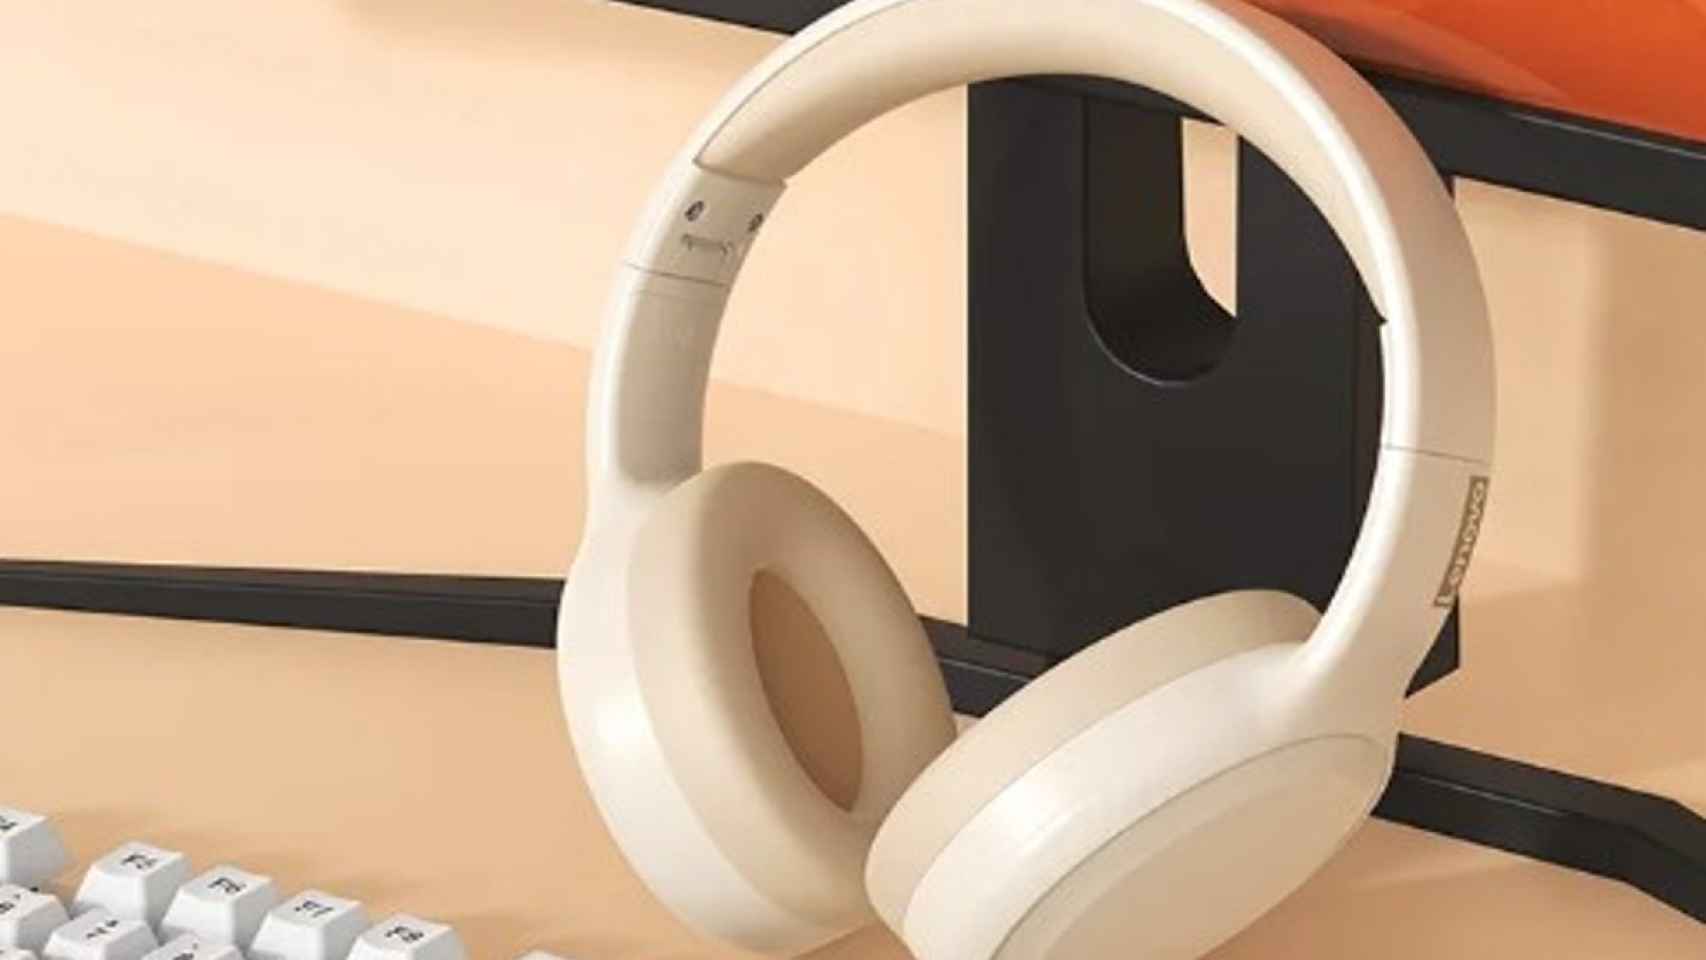 Estos auriculares inalámbricos Lenovo cuestan menos de 13 euros y